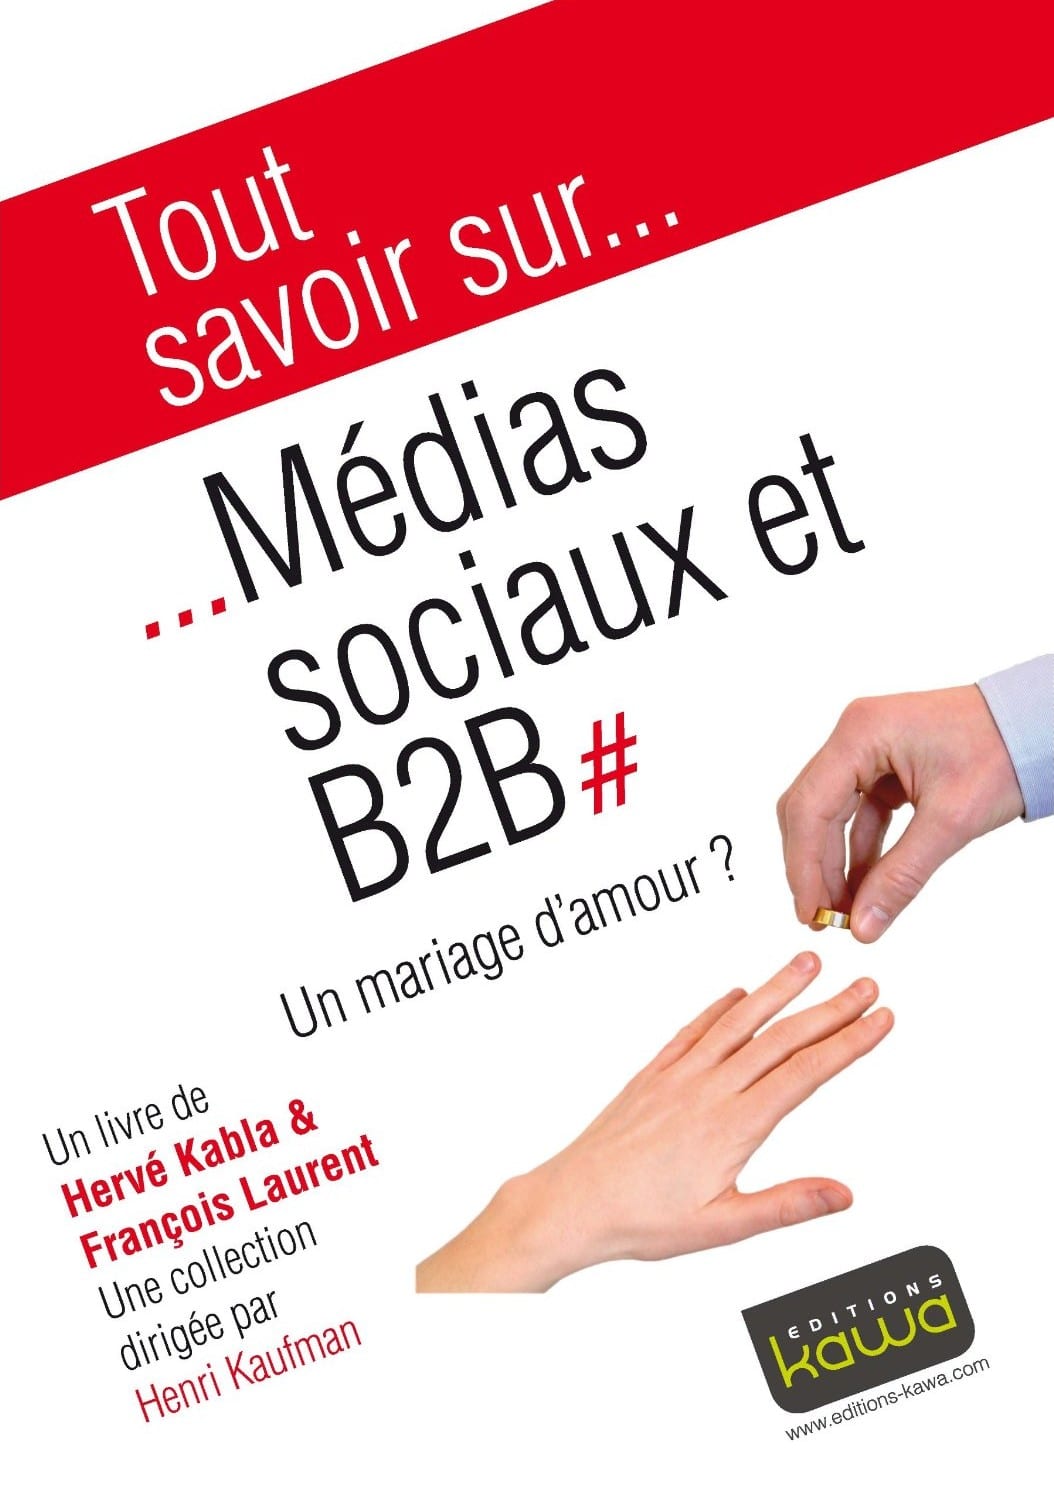 Media Sociaux et B2B, un mariage d'amour ? - Emilie Ogez, Hervé Kabla et Franck Rosenthal 5